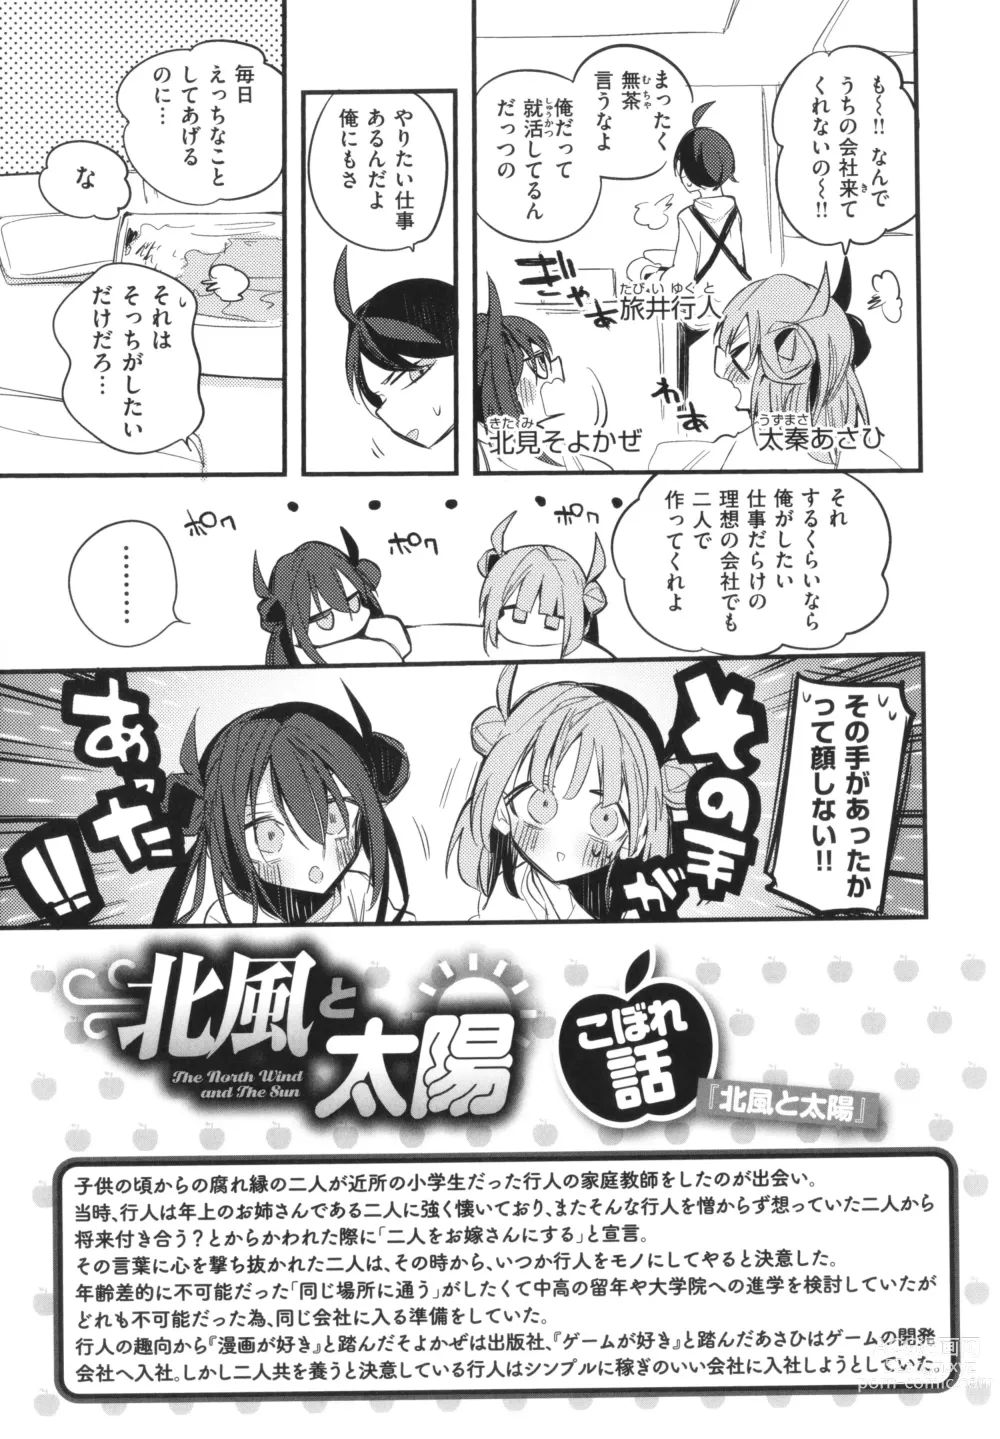 Page 157 of manga New Tawawa Paradise